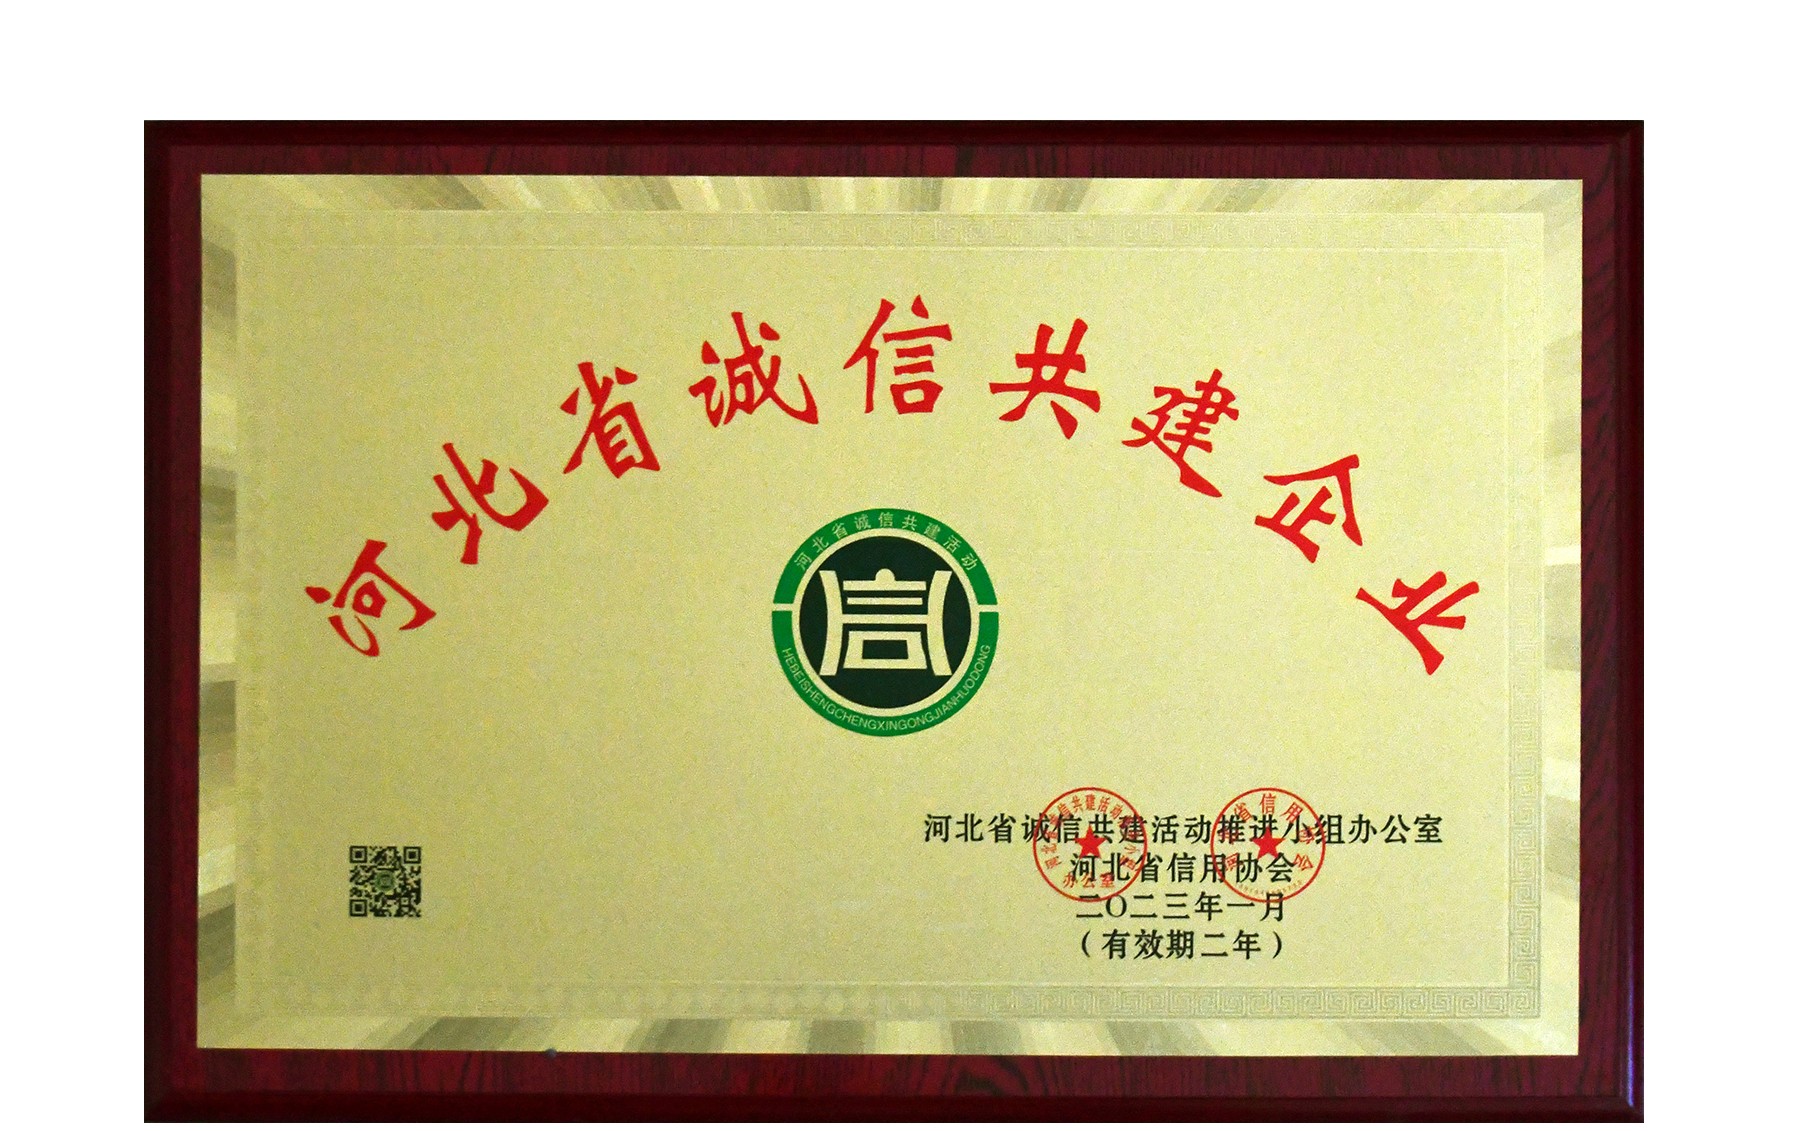 我公司榮獲河北省誠信共建企業